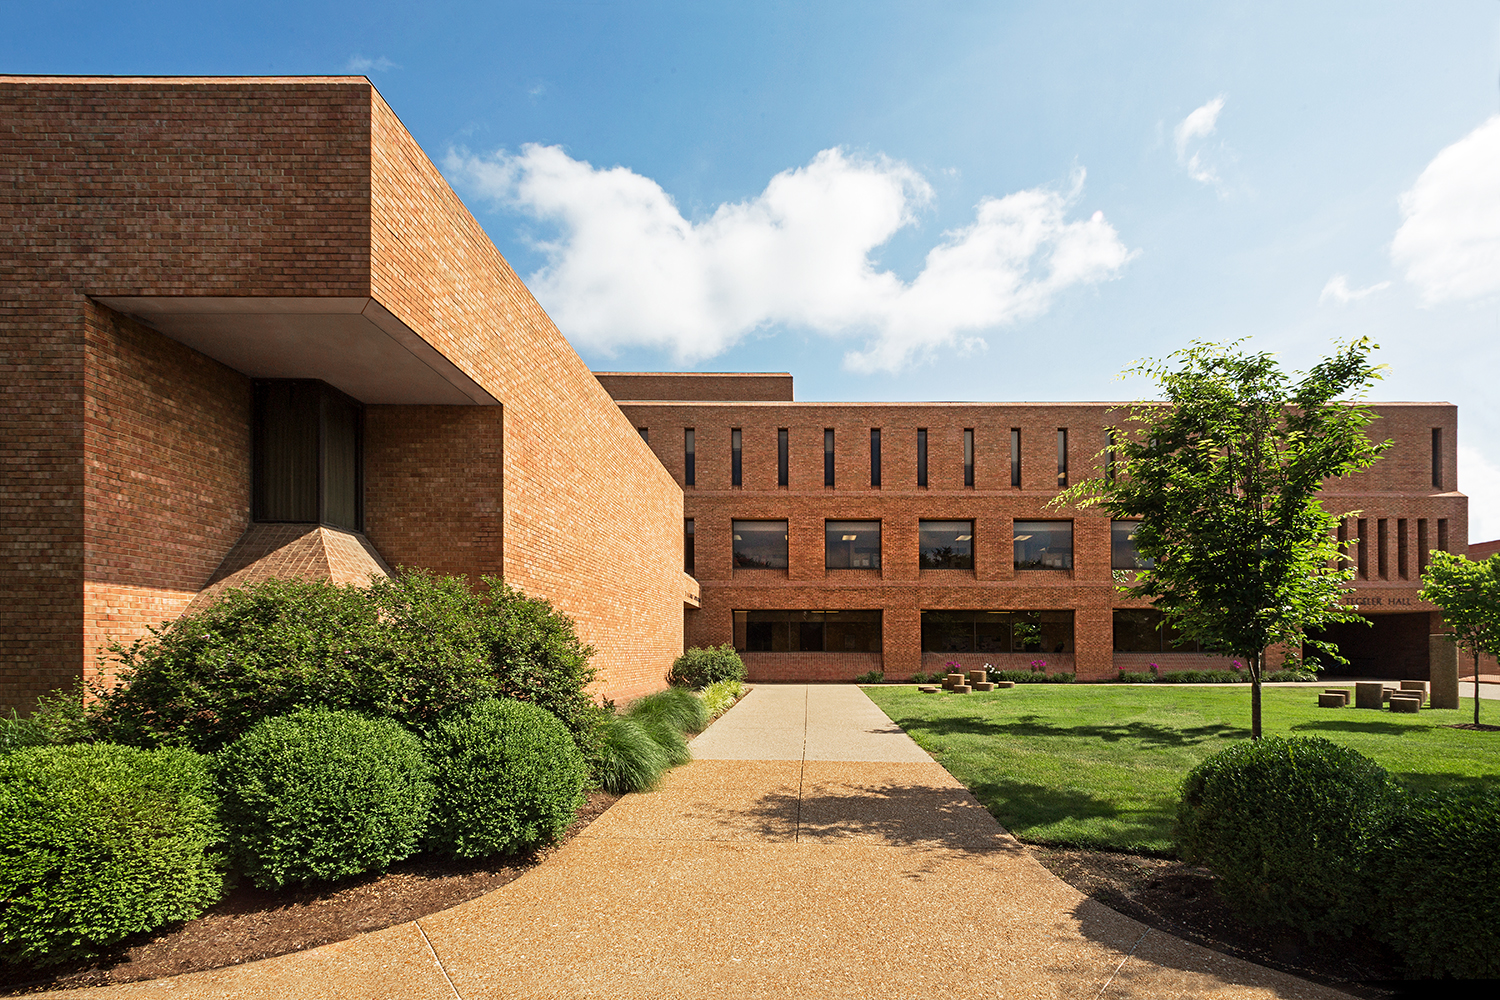 Tegeler Hall / St. Louis University / St. Louis MO / Smith & Entzeroth